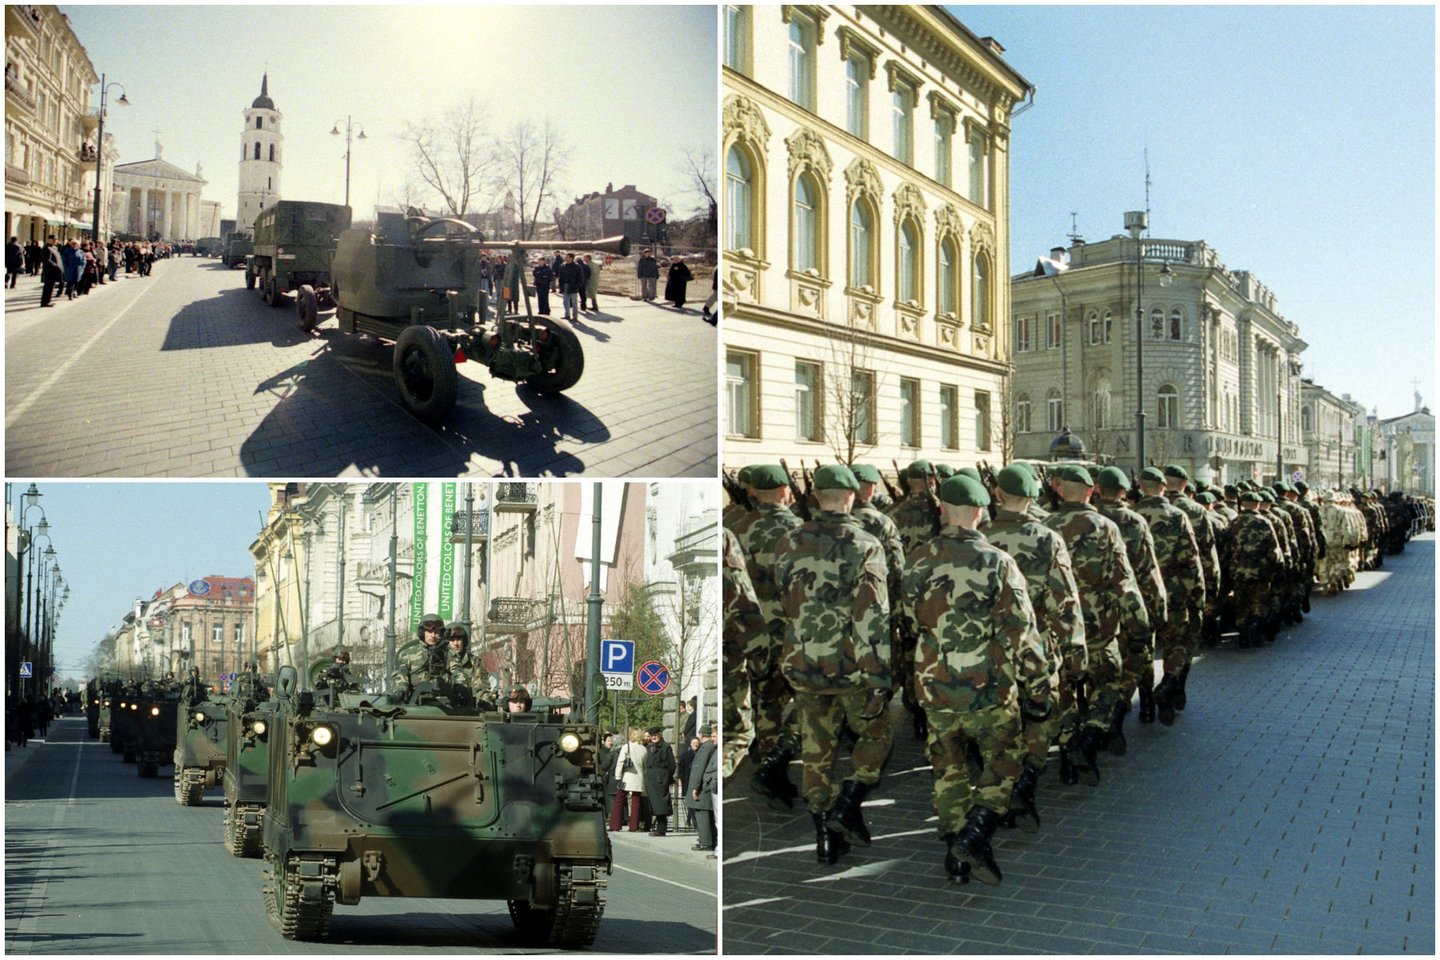 Istorinės nuotraukos iš didžiausio Nepriklausomos Lietuvos karinio parado 2004-ųjų pavasarį <br>A. Pliadis/KAM nuotr.